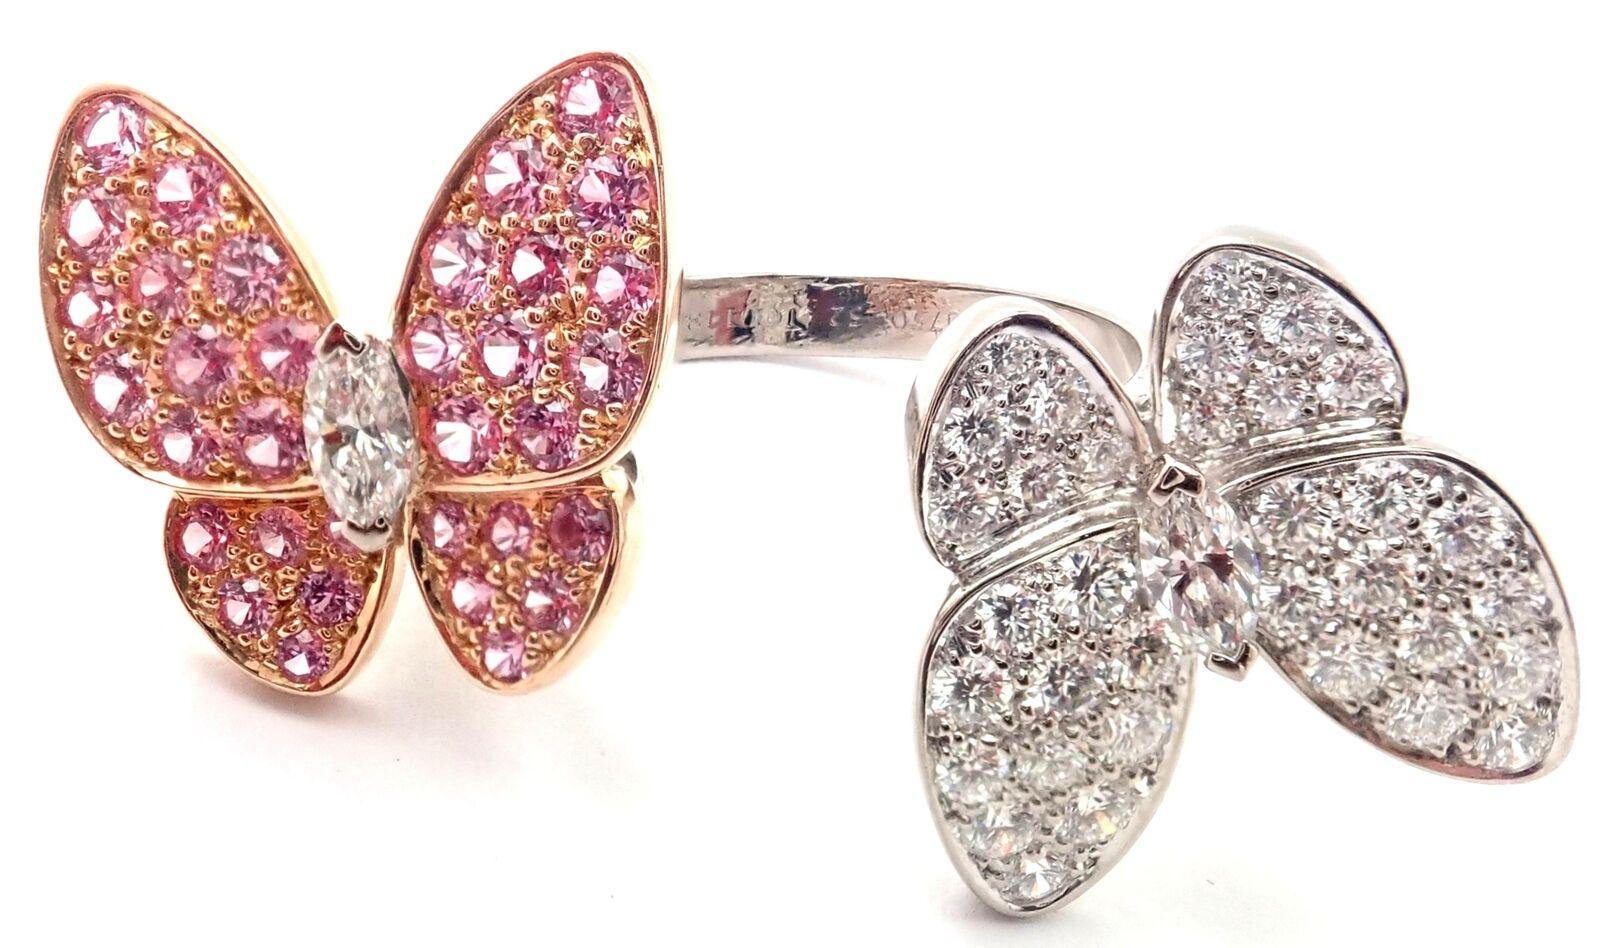 18k Weißgold Diamant und rosa Saphir zwei Schmetterling zwischen dem Finger Ring 
von Van Cleef & Arpels.
Mit 36 runden Diamanten im Brillantschliff VVS1 Klarheit, E Farbe Gesamtgewicht .99ct
34 runde rosa Saphire Gesamtgewicht .88ct
Dieser Ring